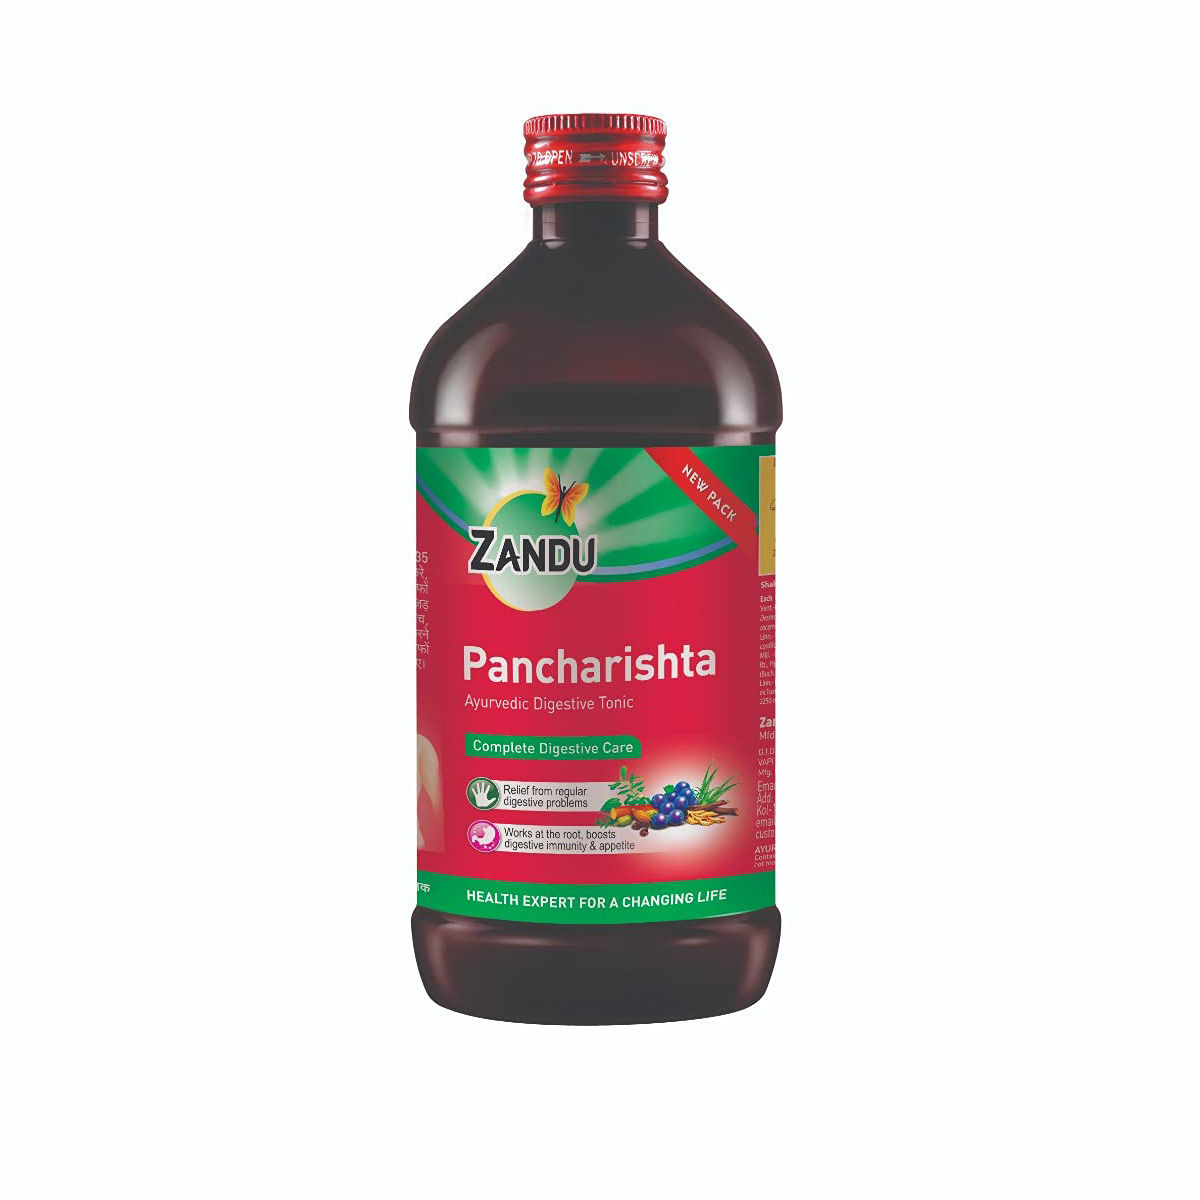 Zandu Pancharistha Ayurvedic Digestive Tonic, 450 ml, Pack of 1 